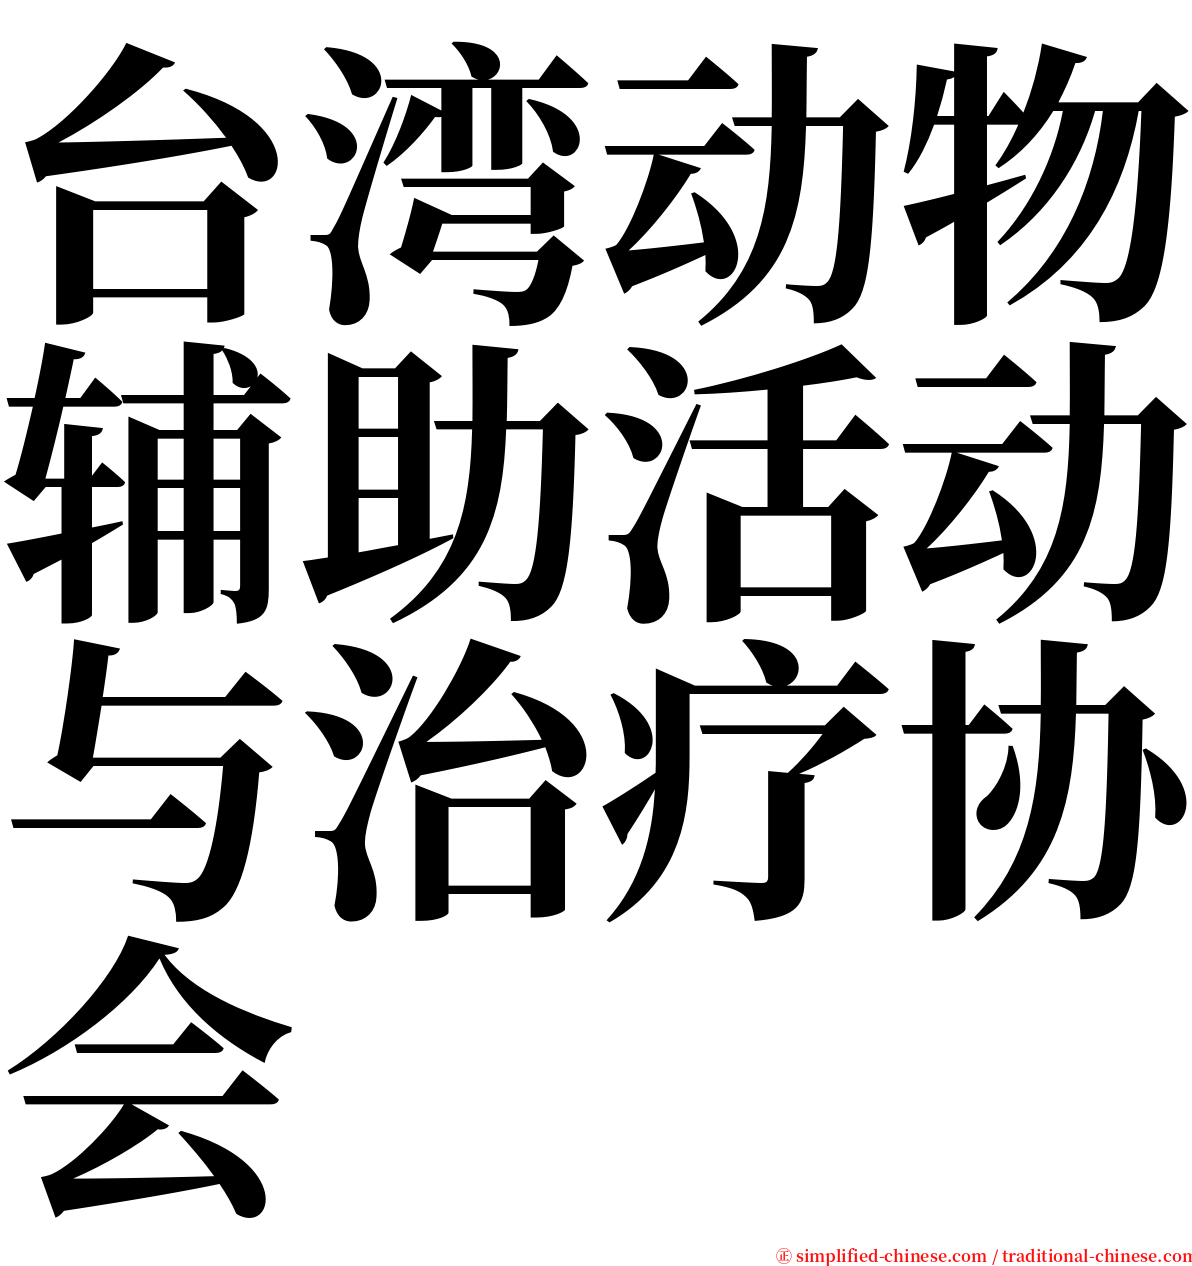 台湾动物辅助活动与治疗协会 serif font